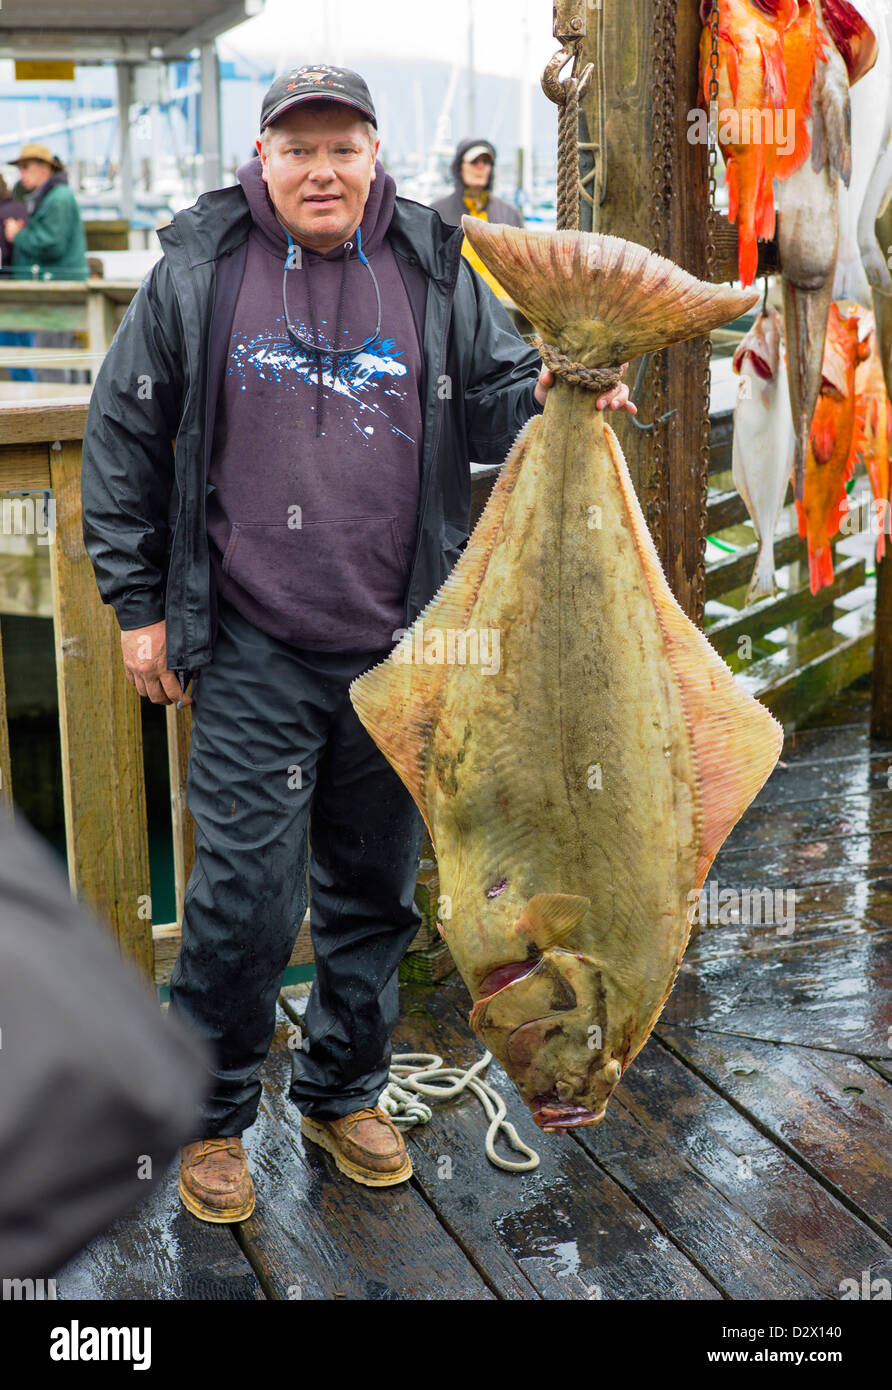 Charter imbarcazione pescatore di scattare fotografie di se stessi con il loro pescato del giorno, Seward, Alaska, STATI UNITI D'AMERICA Foto Stock